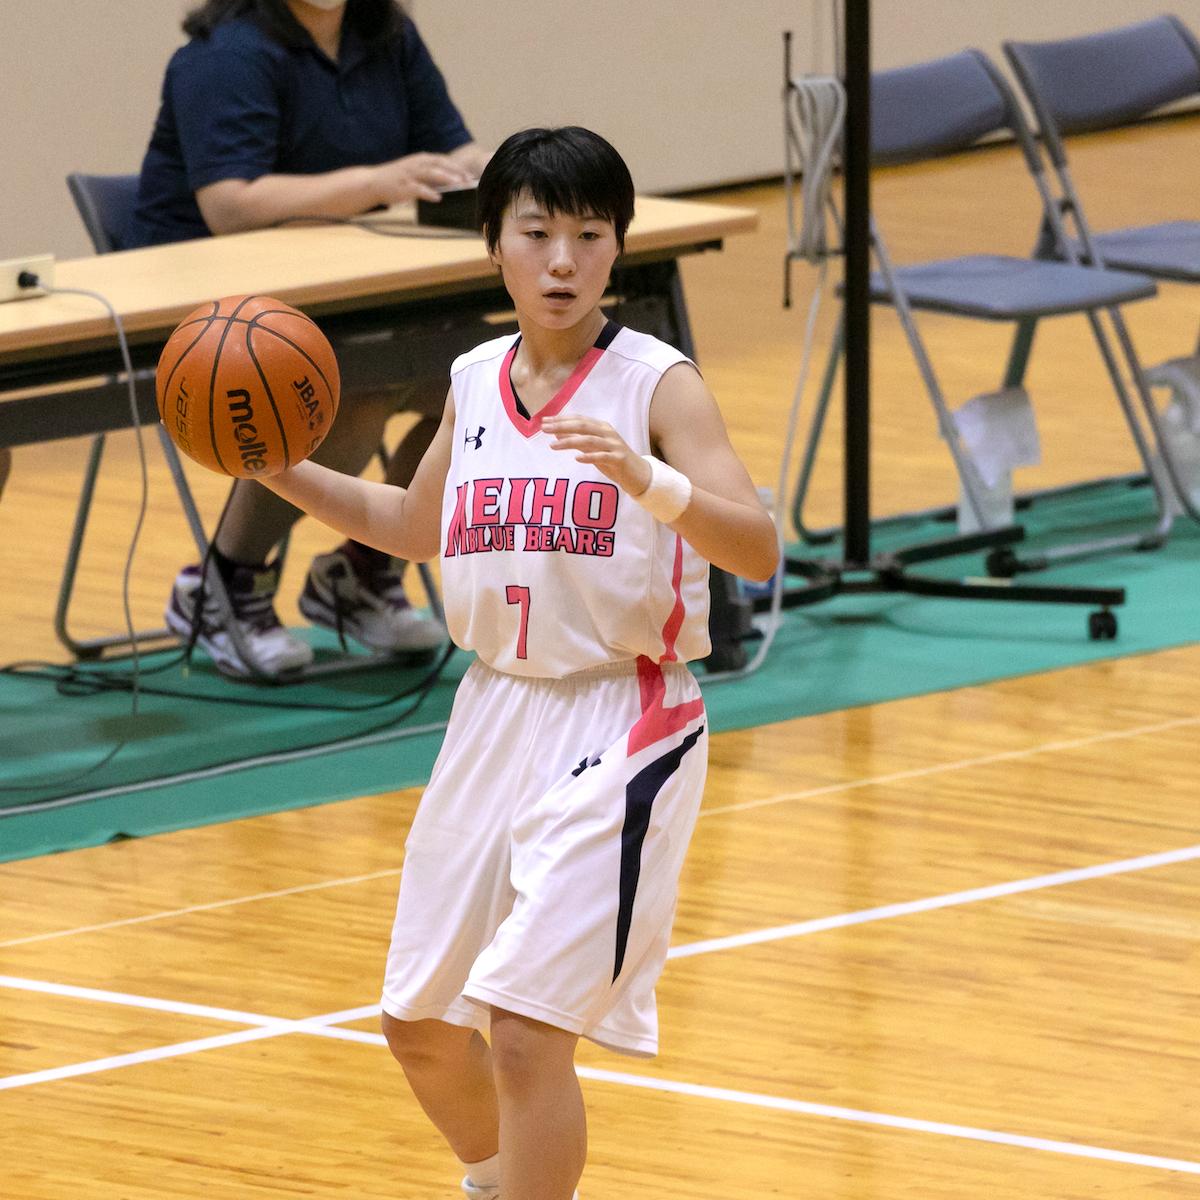 バスケ jk 体育館でバスケをする女子高生の写真素材 [FYI01822371 ...